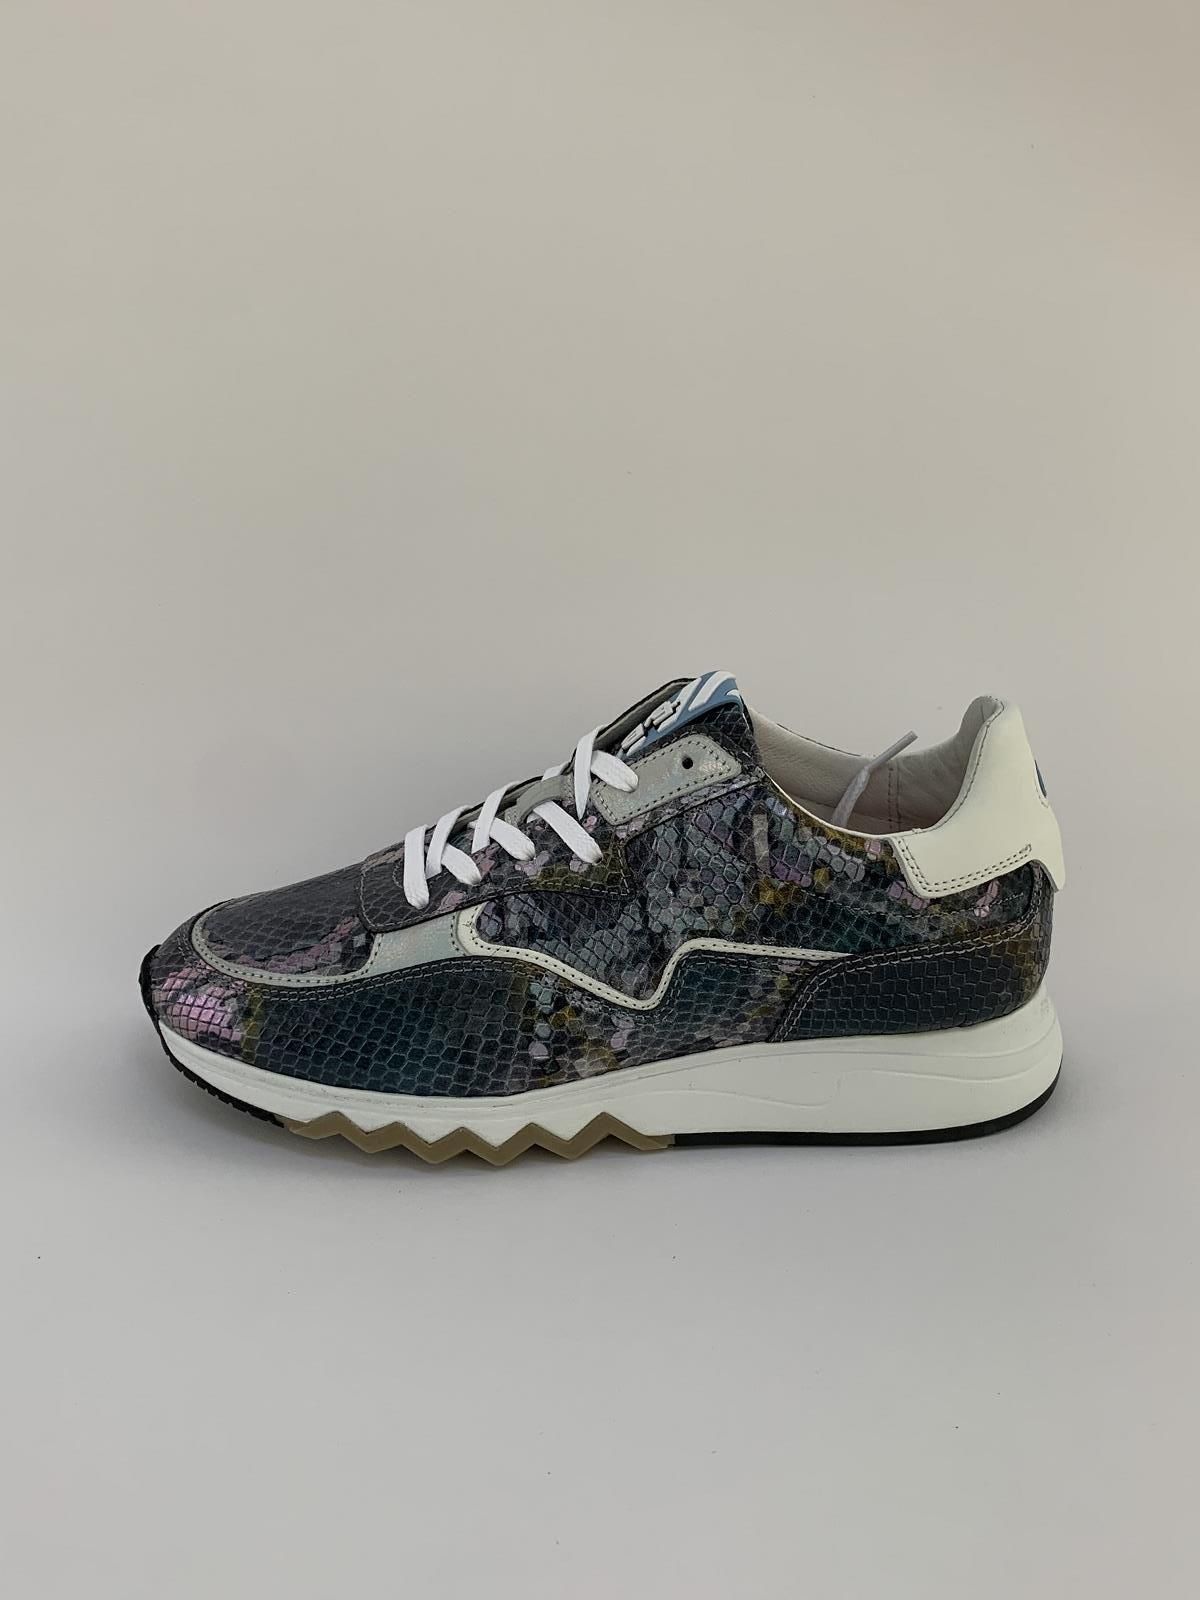 Van Bommel Sneaker Paars+kleur dames (Runner Phyton Mauve/P - 85334/07) - Schoenen Luca